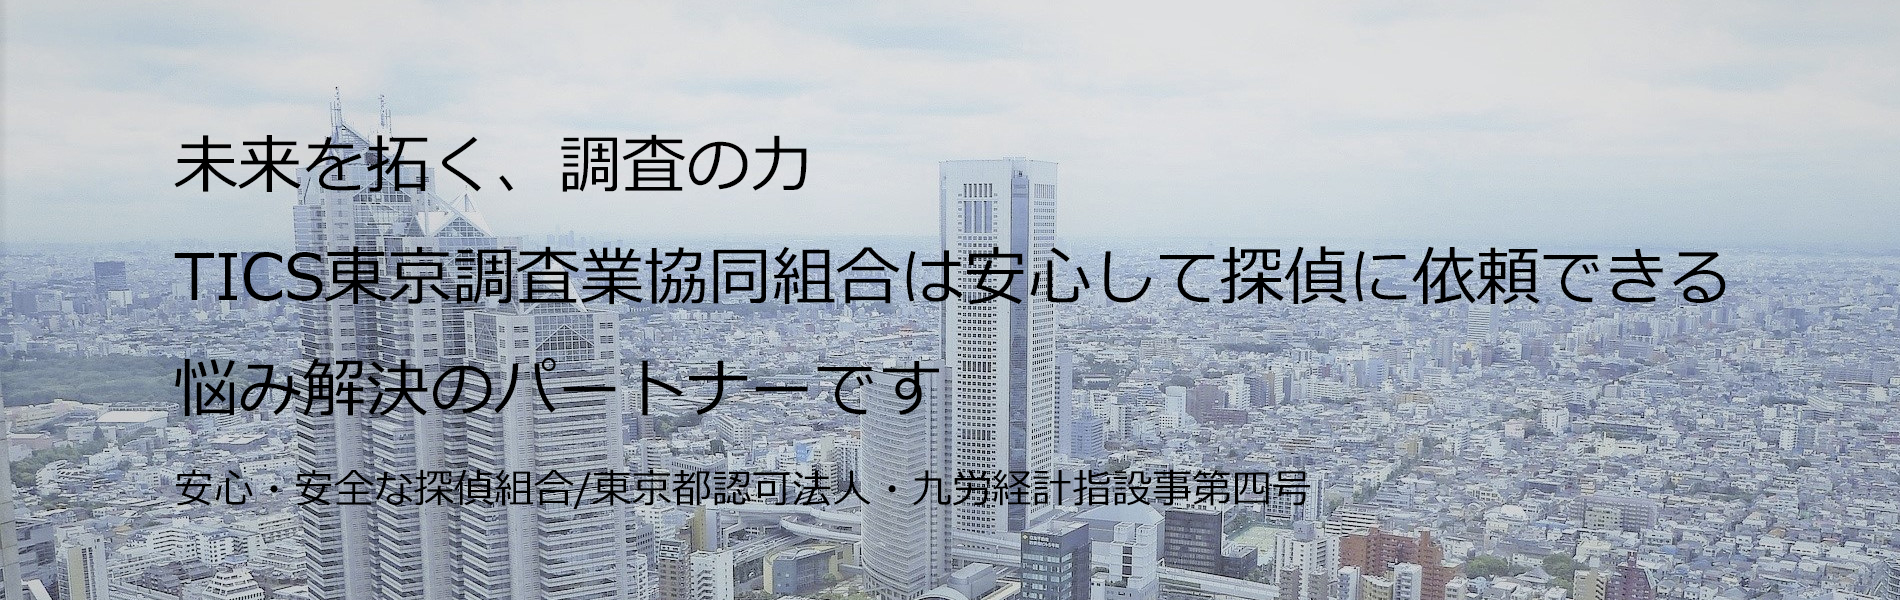 TICS東京調査業協同組合のwebsiteです